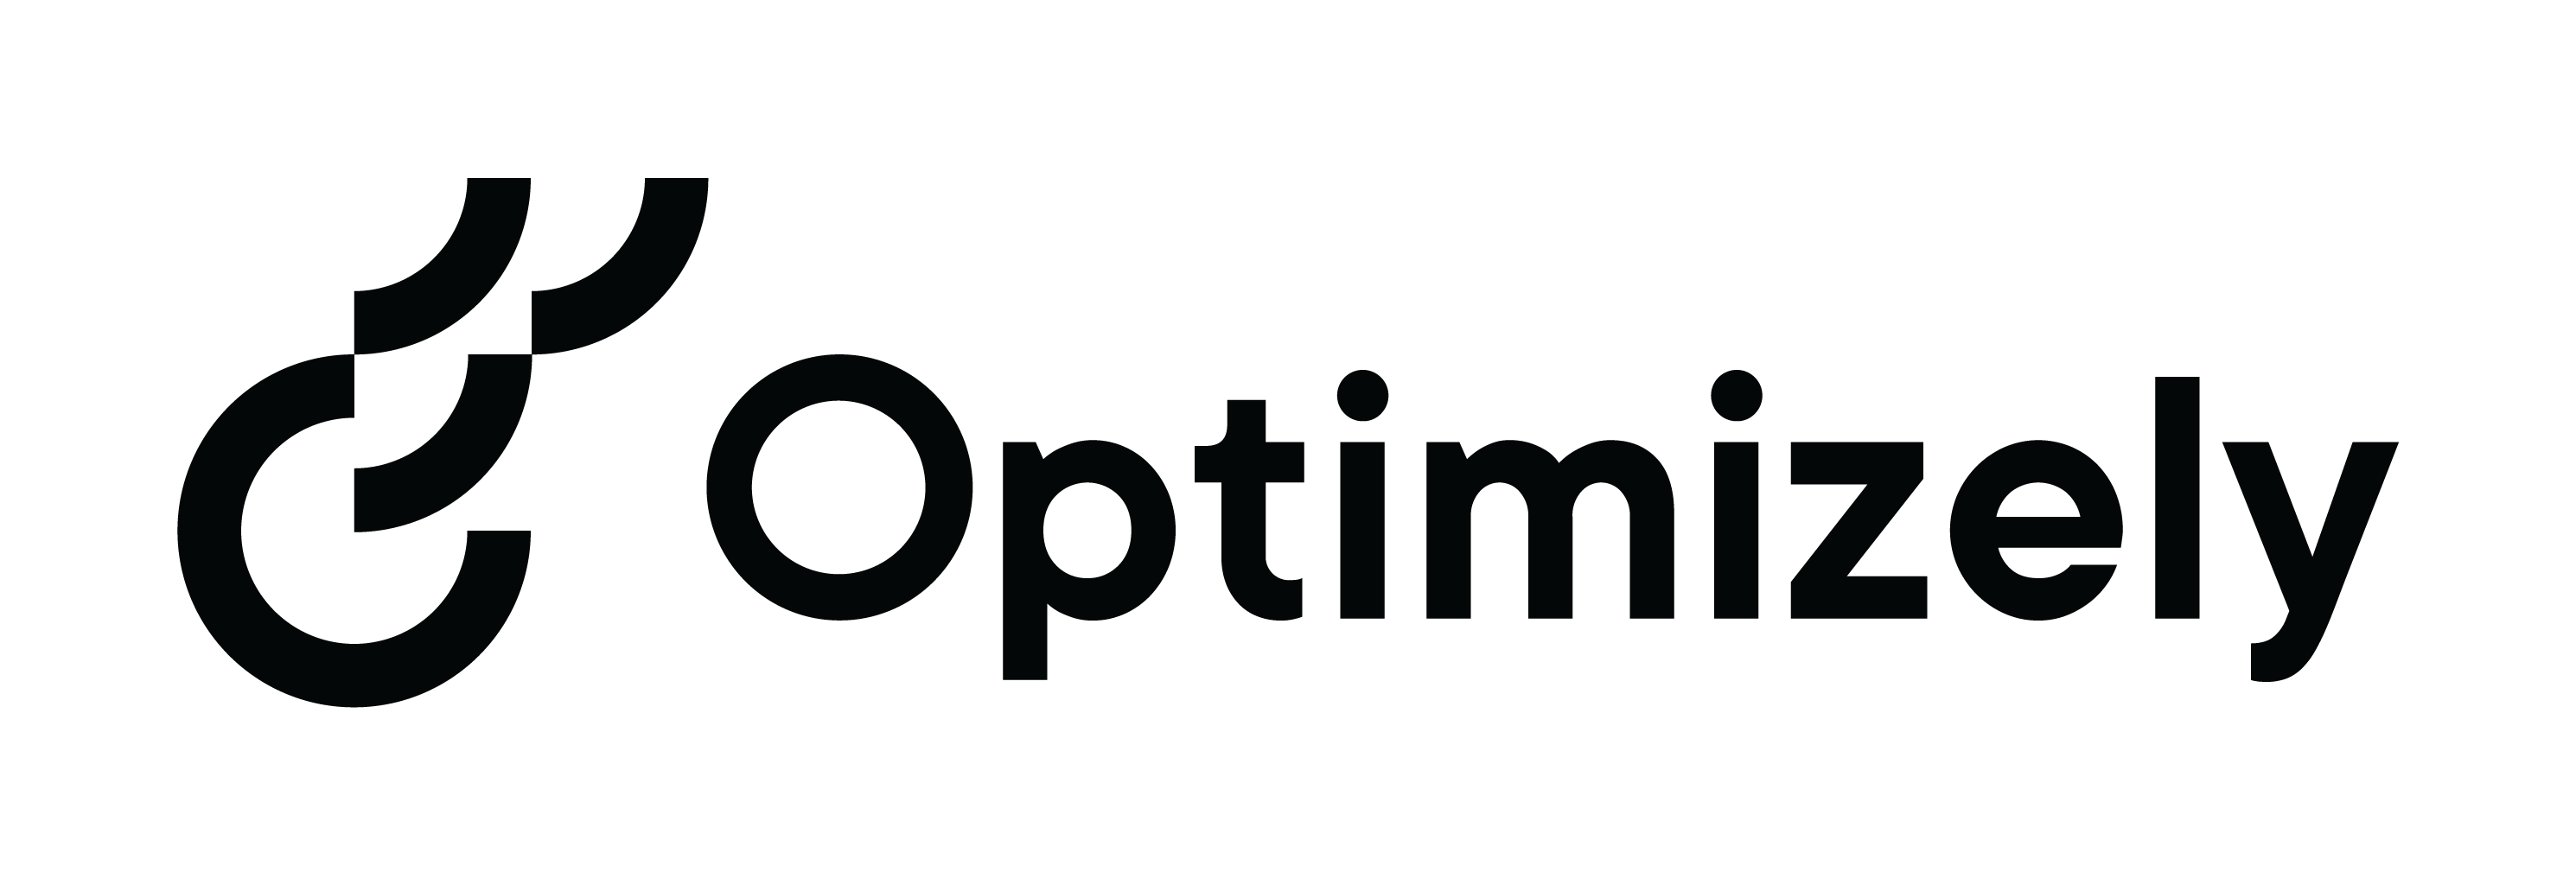 Optimizley company logo